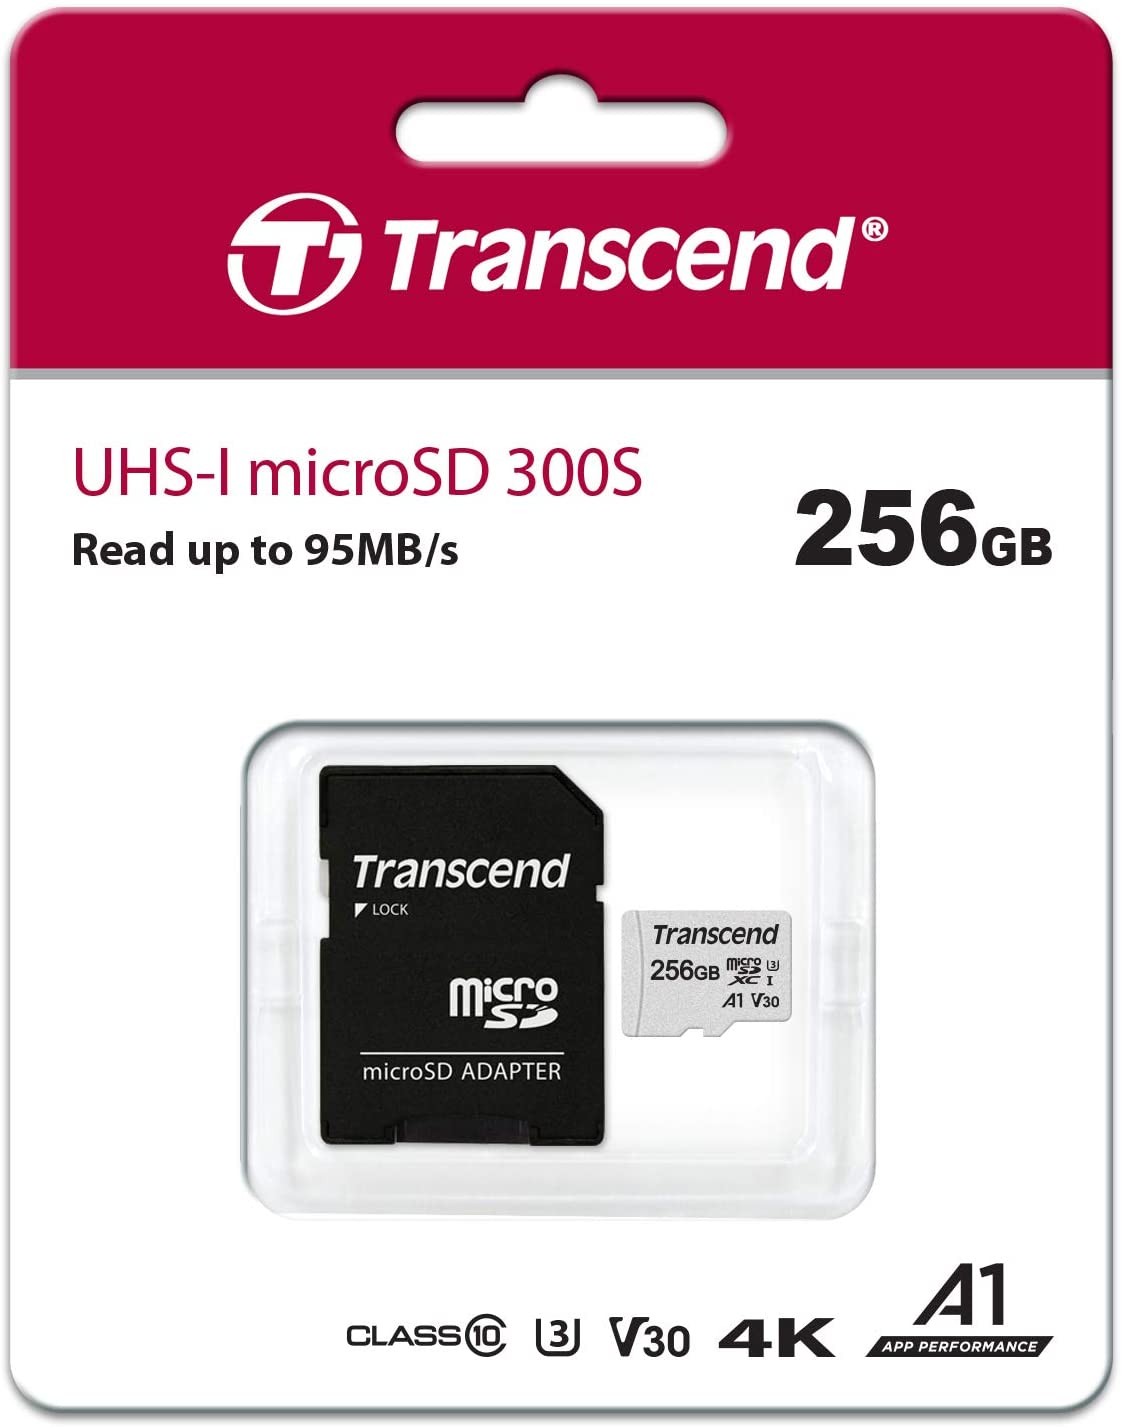 TRANSCEND UHS-I MICROSD 300S 256 GB